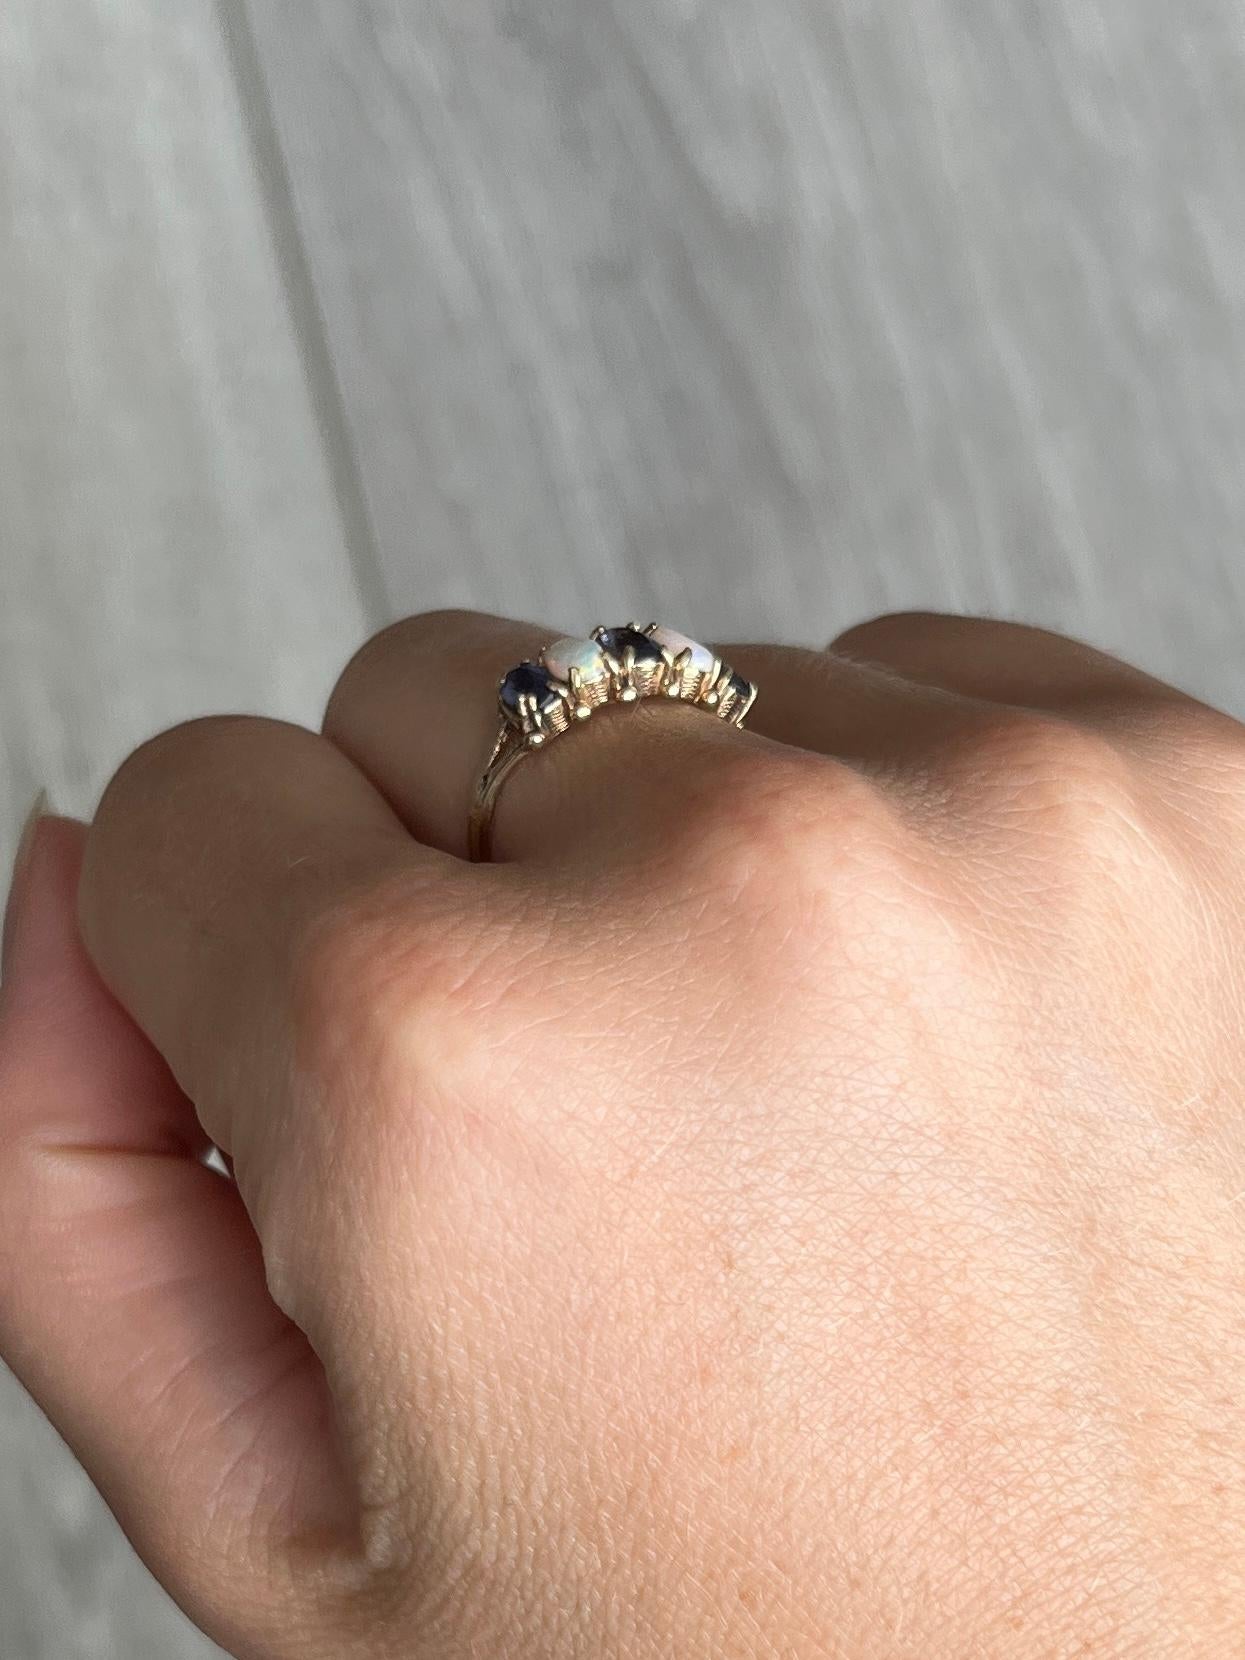 Dieser herrliche Ring enthält zwei Opale und drei Amethyste. Der Ring ist aus 9-karätigem Gold modelliert und hat geteilte Schultern. 

Ring Größe: M oder 6 1/4
Breiteste Stelle: 6,5 mm

Gewicht: 1,6 g